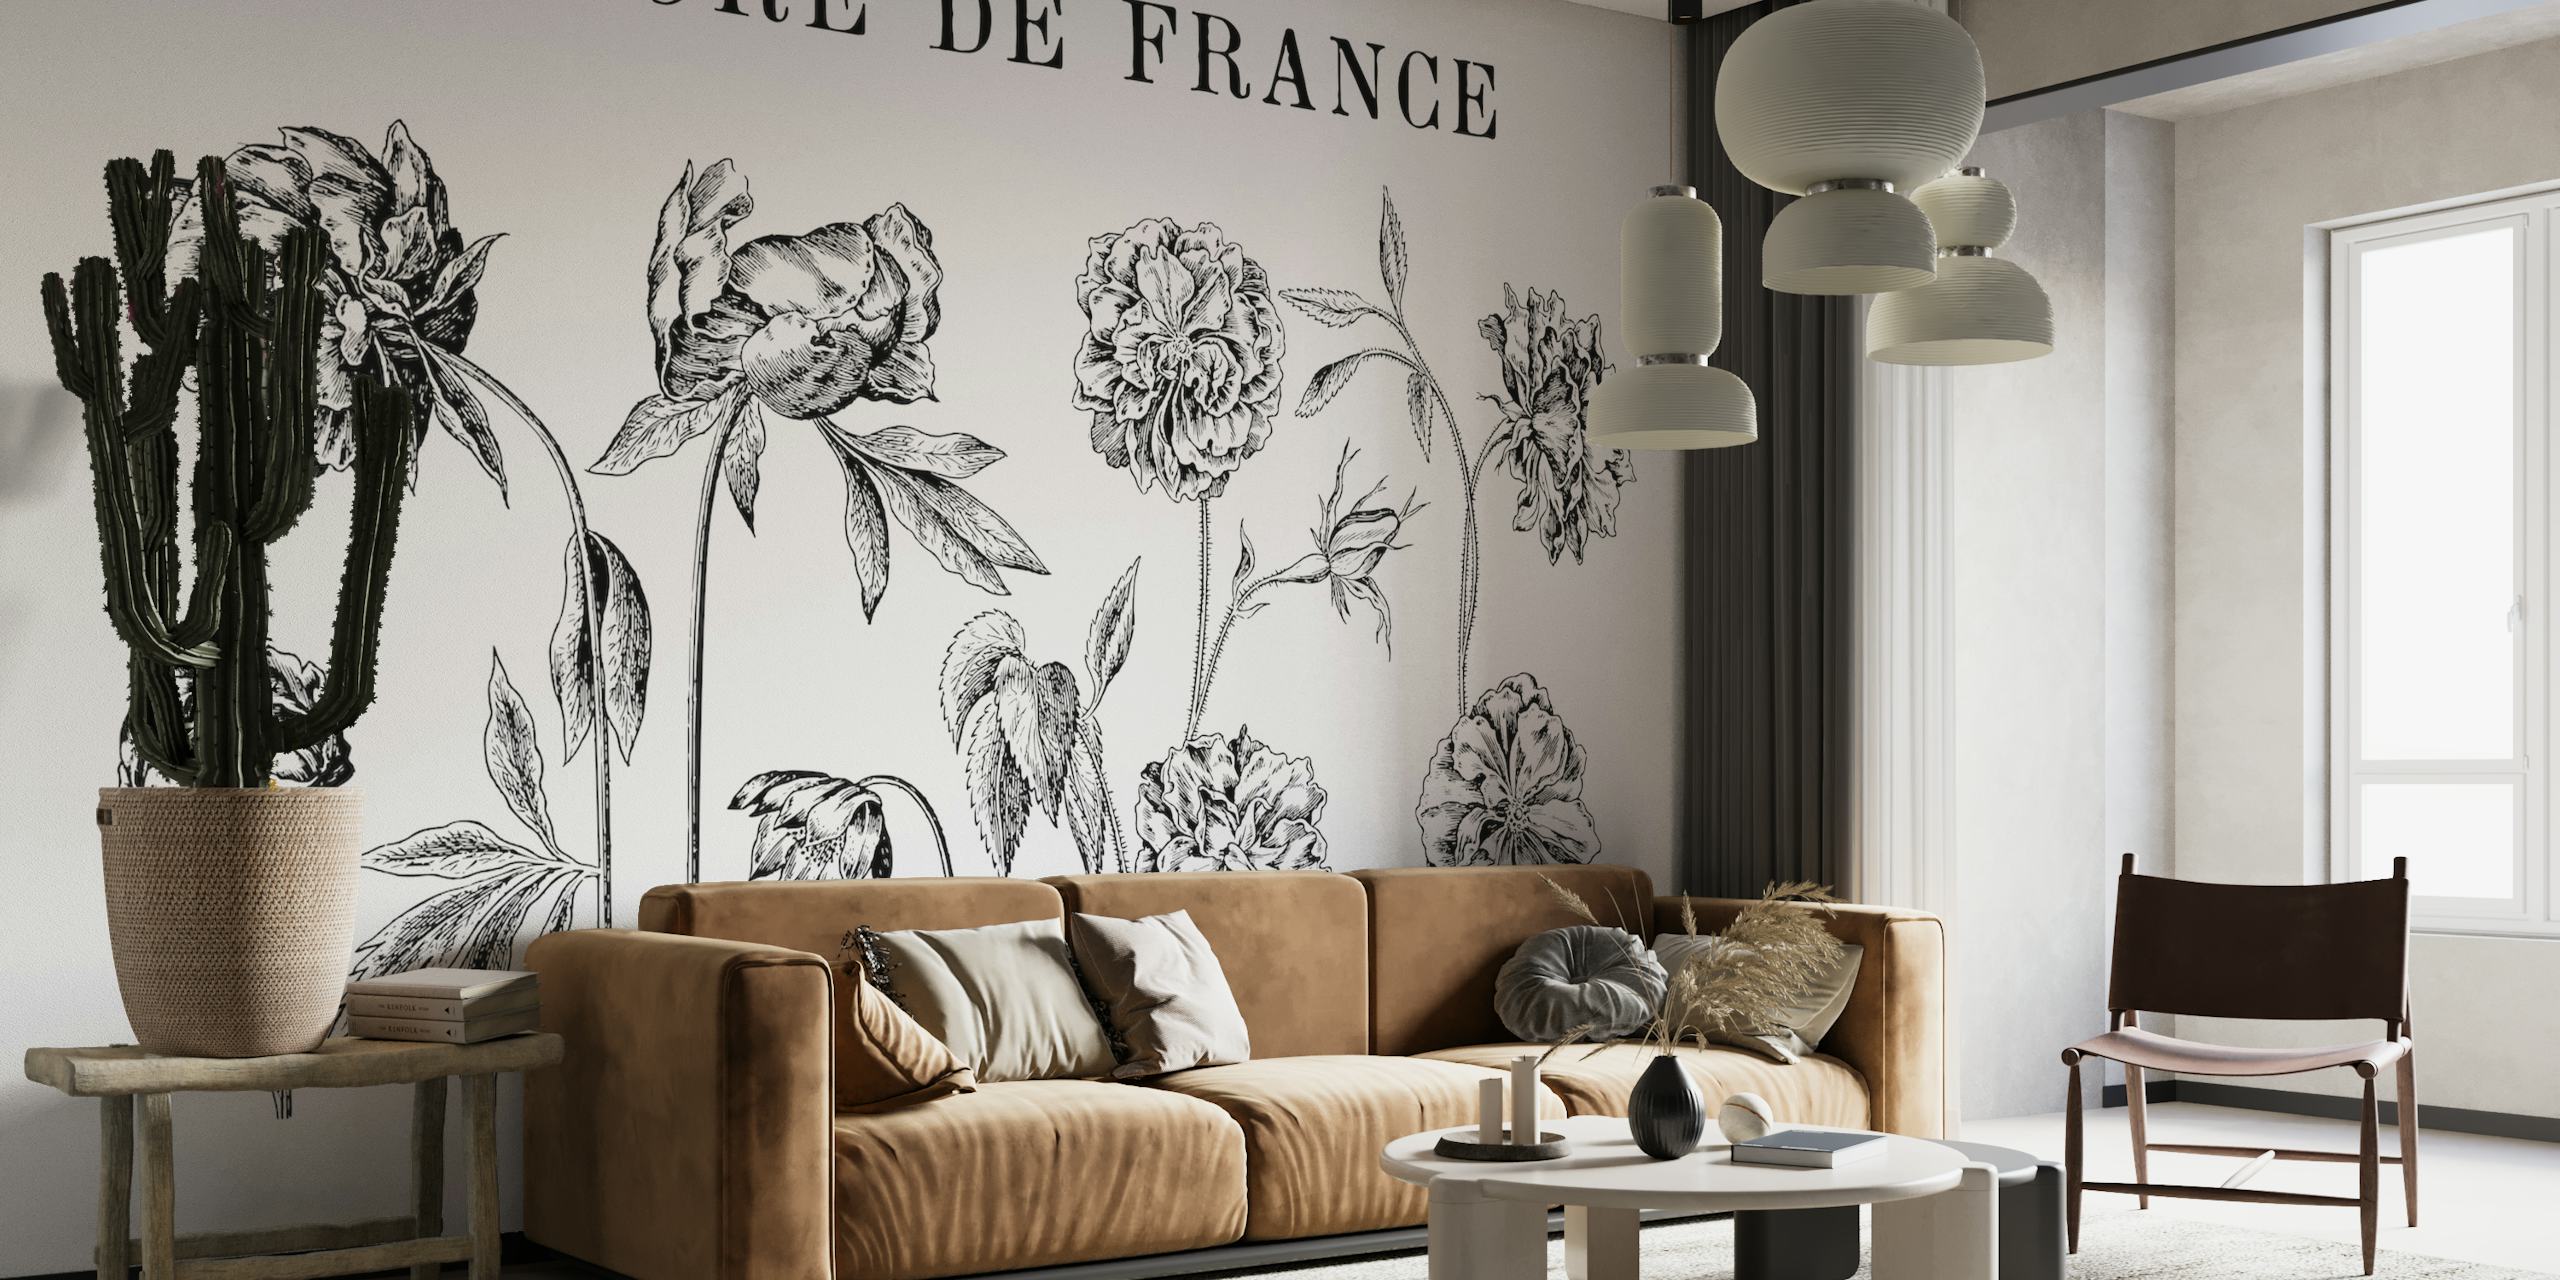 Schwarz-weißes Wandgemälde mit botanischen Zeichnungen, das detaillierte historische Blumenkunstwerke mit dem Titel „FLORE DE FRANCE“ zeigt.